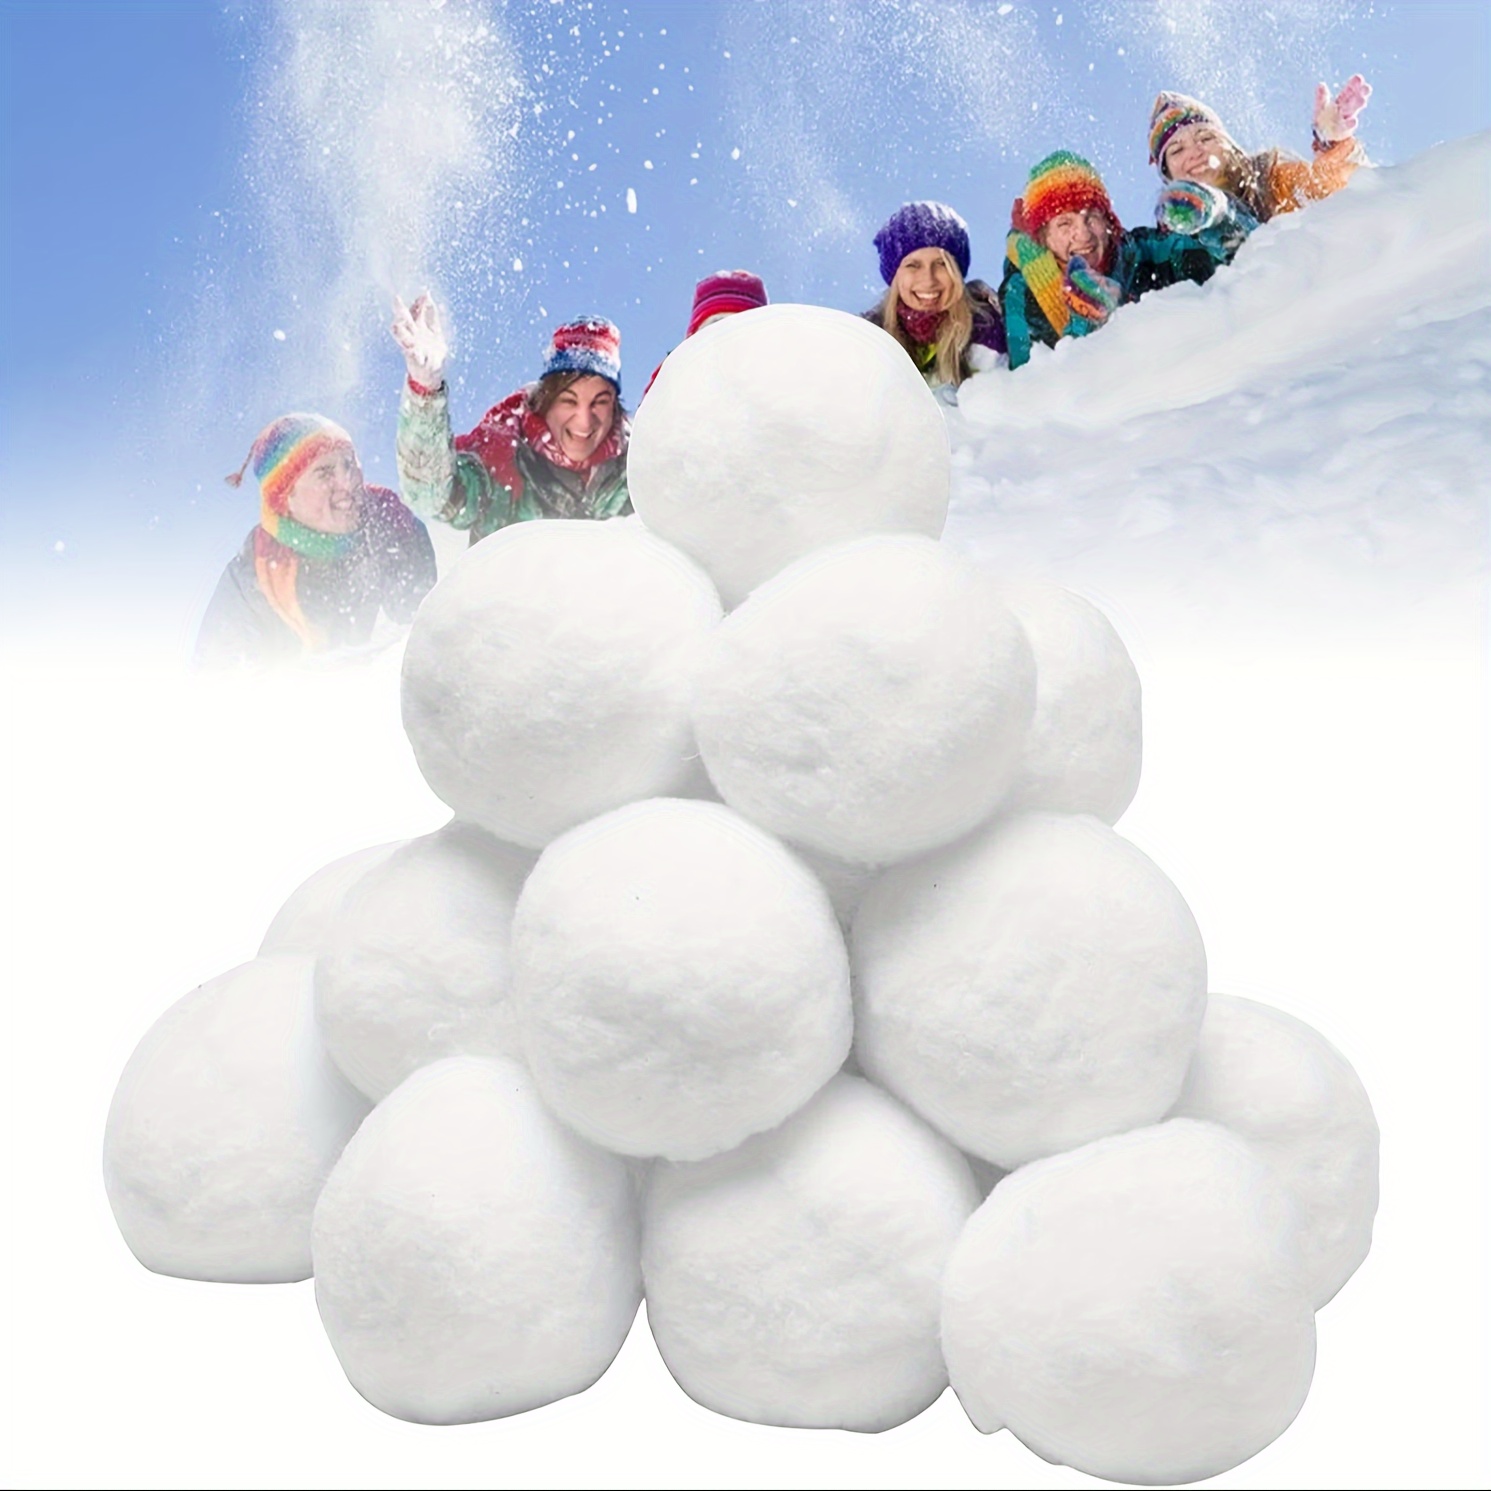 50-PK Fake Snowballs for Kids I Indoor Snowball Fight Set I Artificial  Snowballs for Kids Indoor & Outdoor I Realistic White Plush Snowballs I